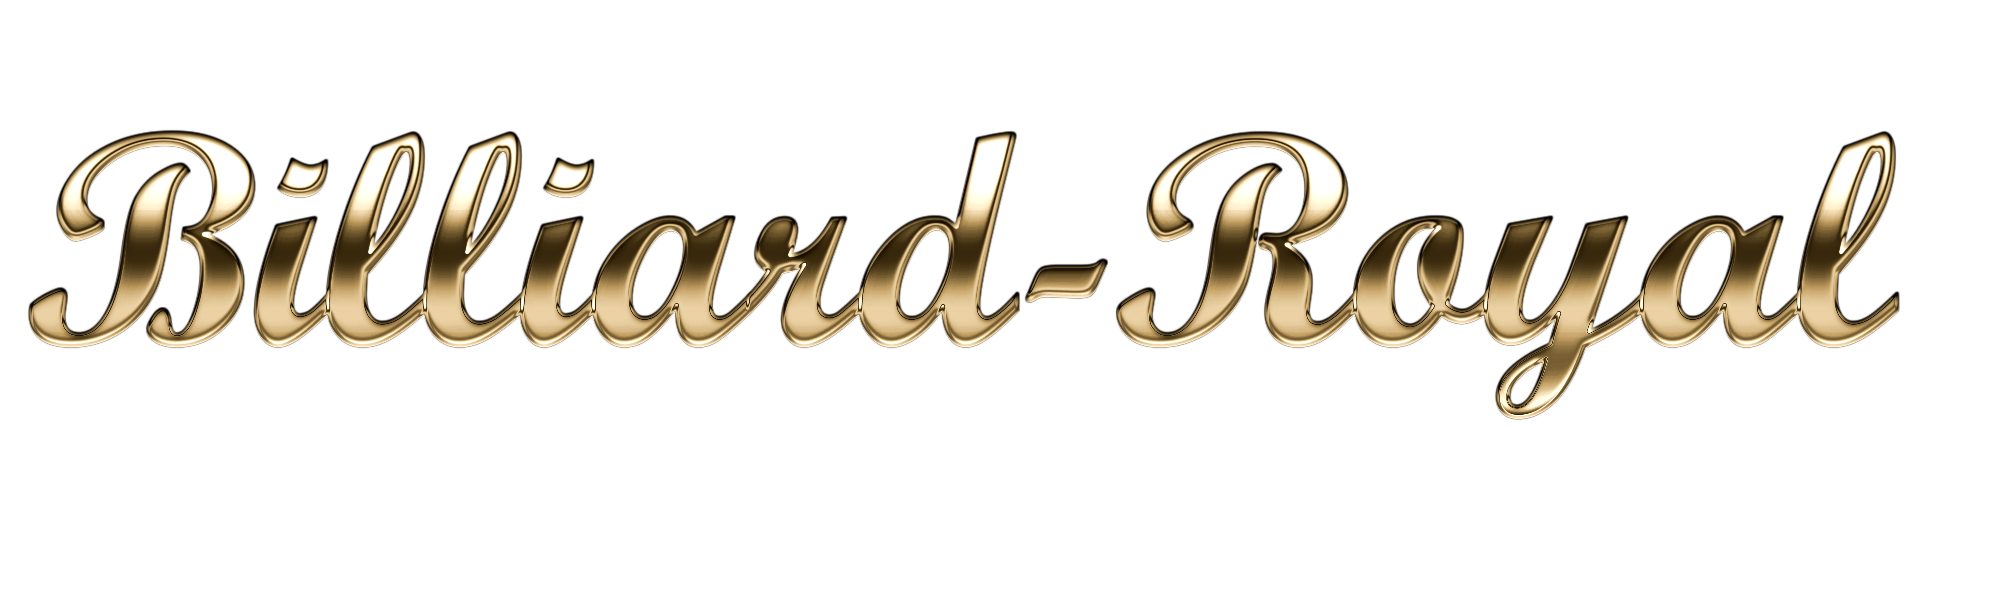 Billiard-Royal